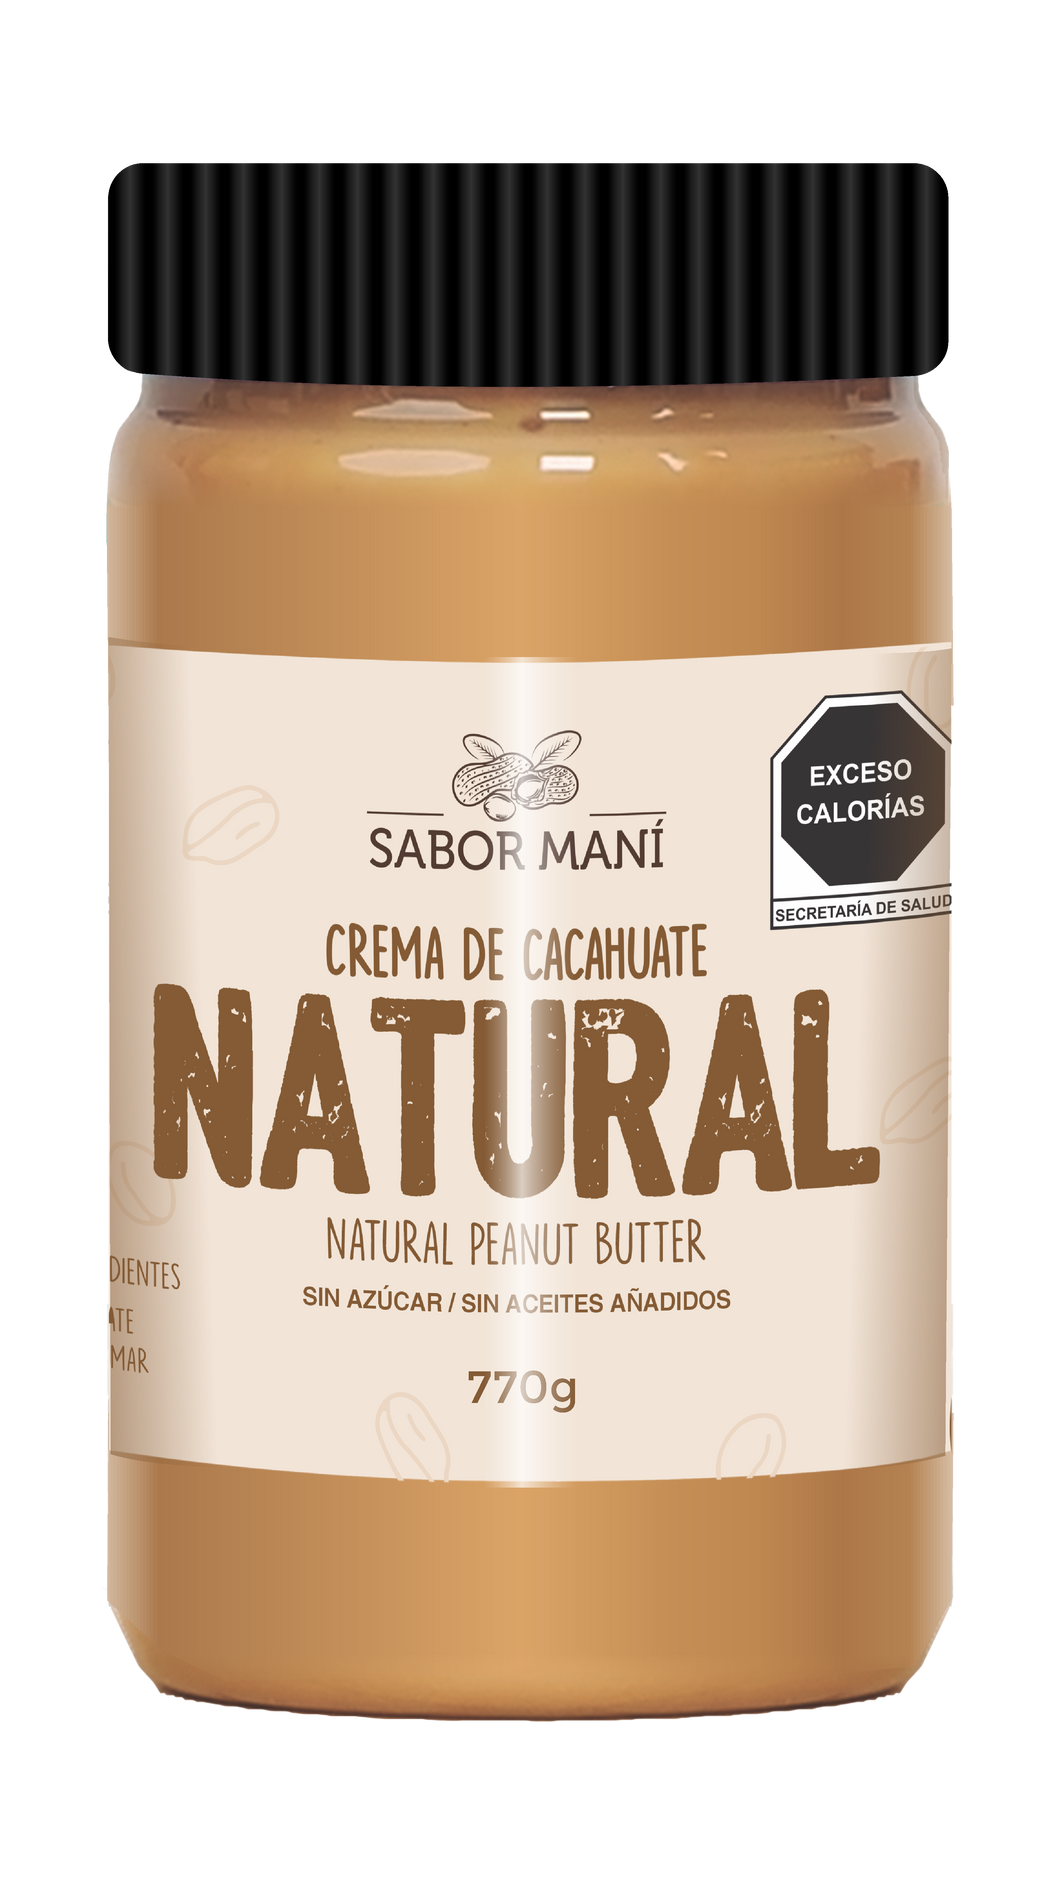 SABOR MANÍ Crema de cacahuate 100% Natural - Pet 770g